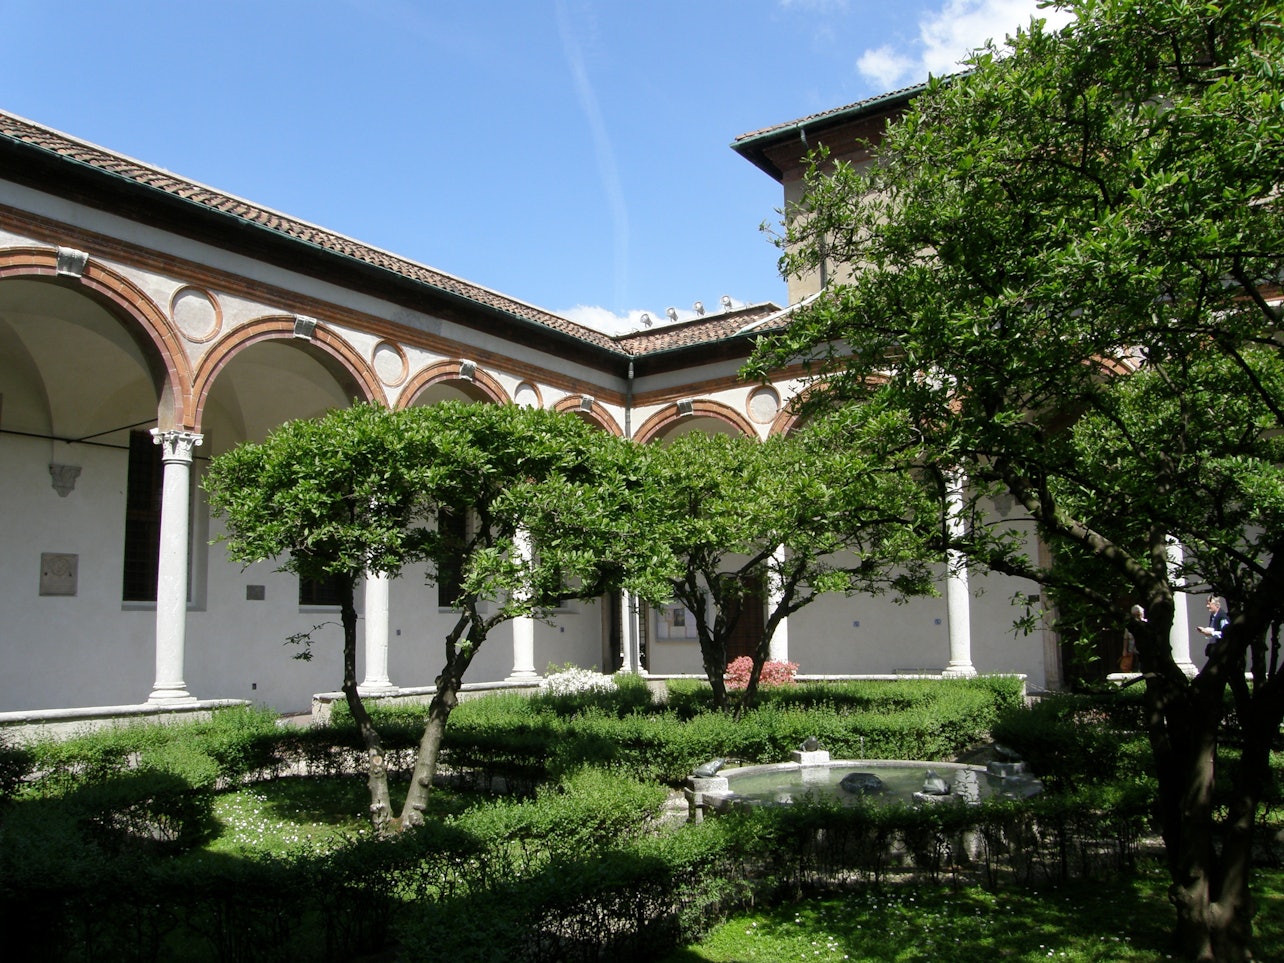 O Melhor de Milão: Duomo, A Última Ceia e Teatro alla Scala - Acomodações em Milão